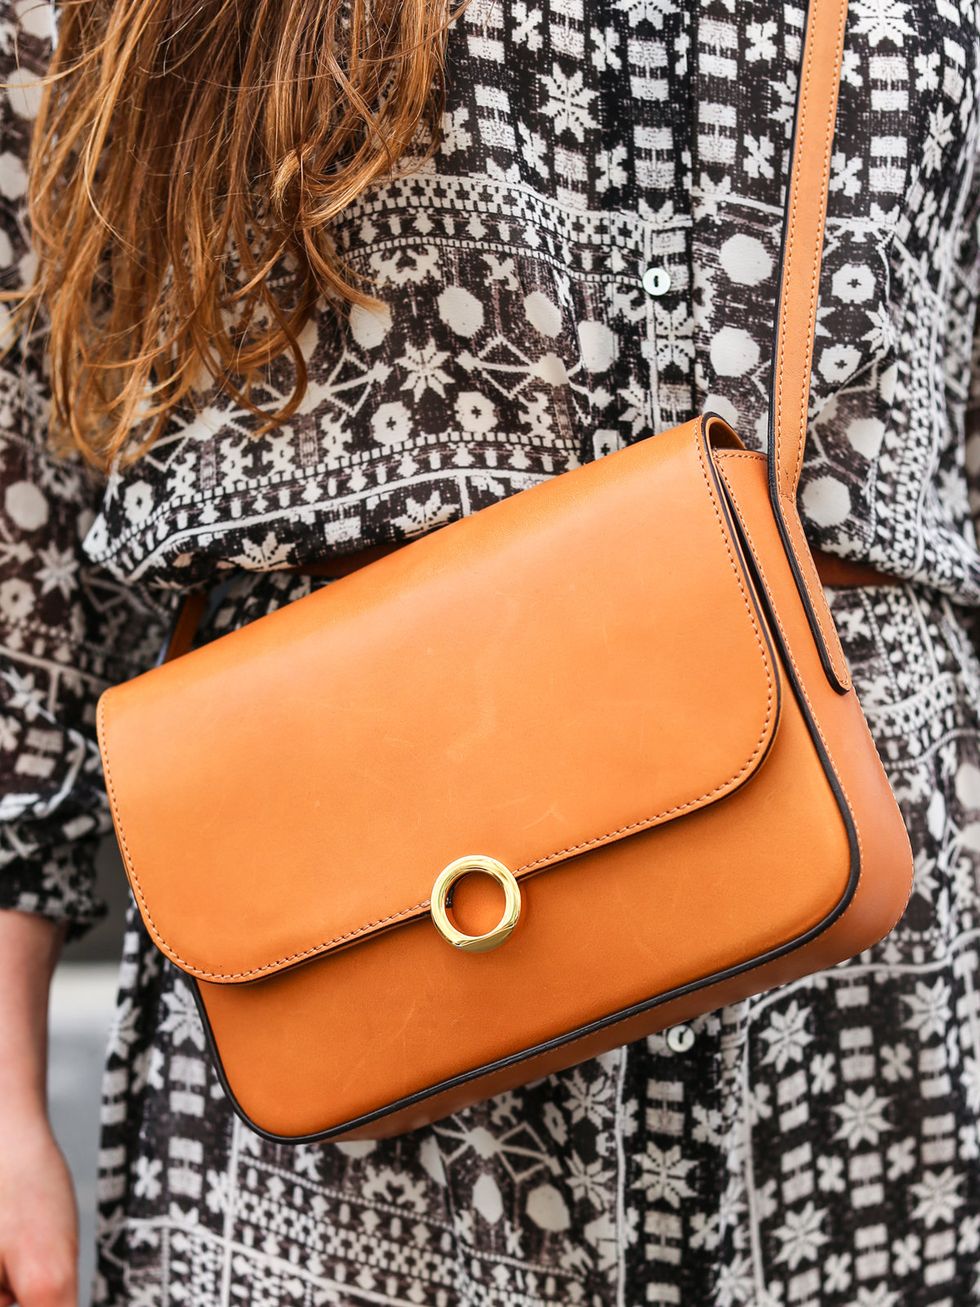 Bag, Handbag, Shoulder, Leather, Tan, Orange, Fashion accessory, Brown, Beige, Joint, 